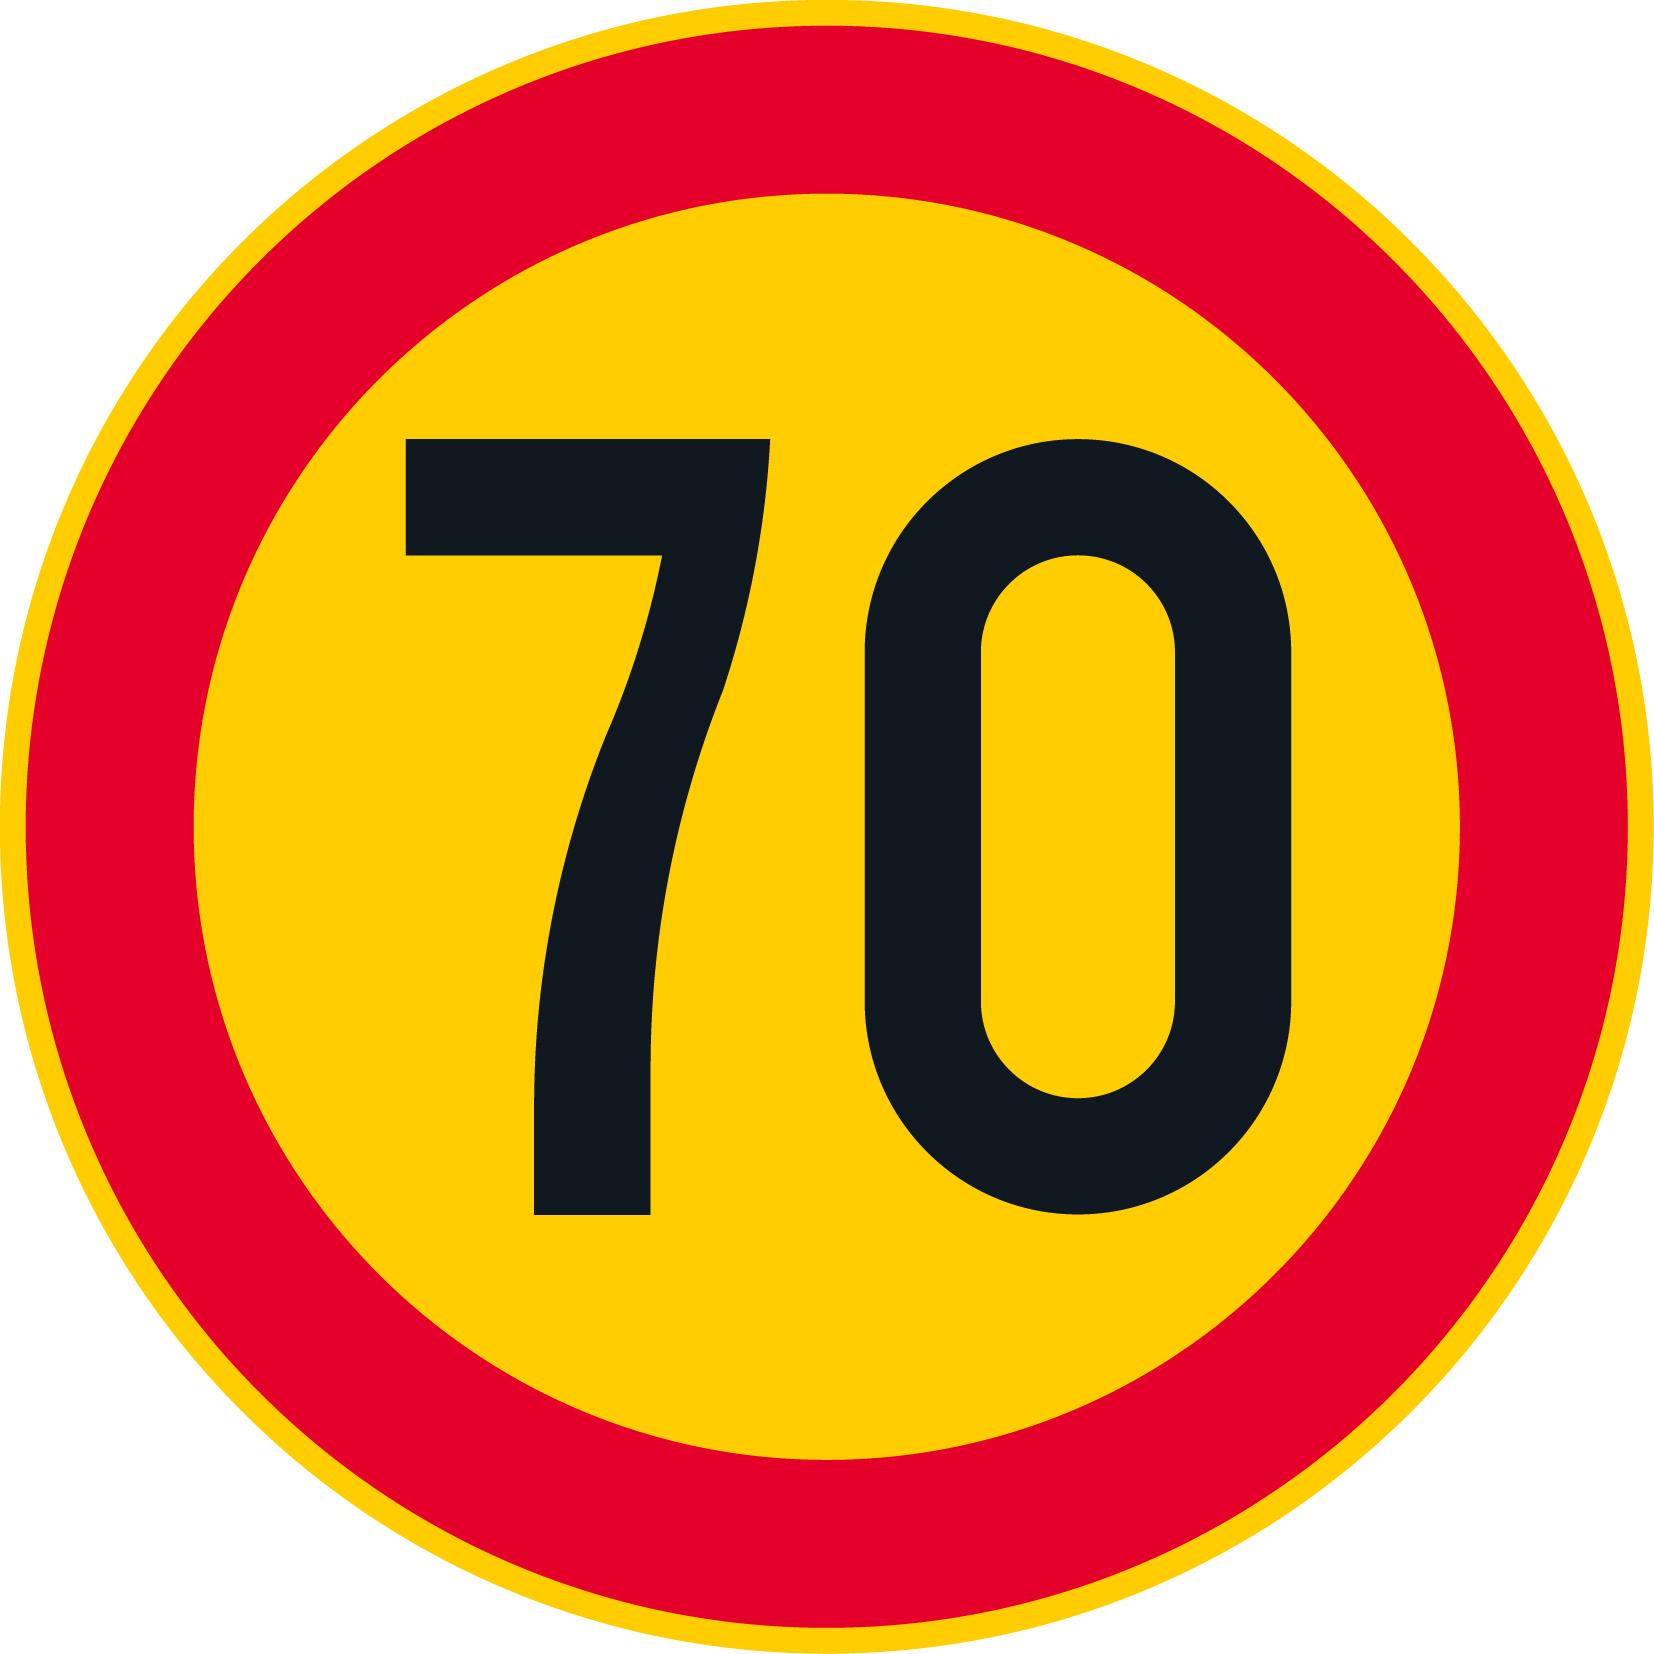 C31-70 Hastighetsbegränsning 70km/h Ö plåt